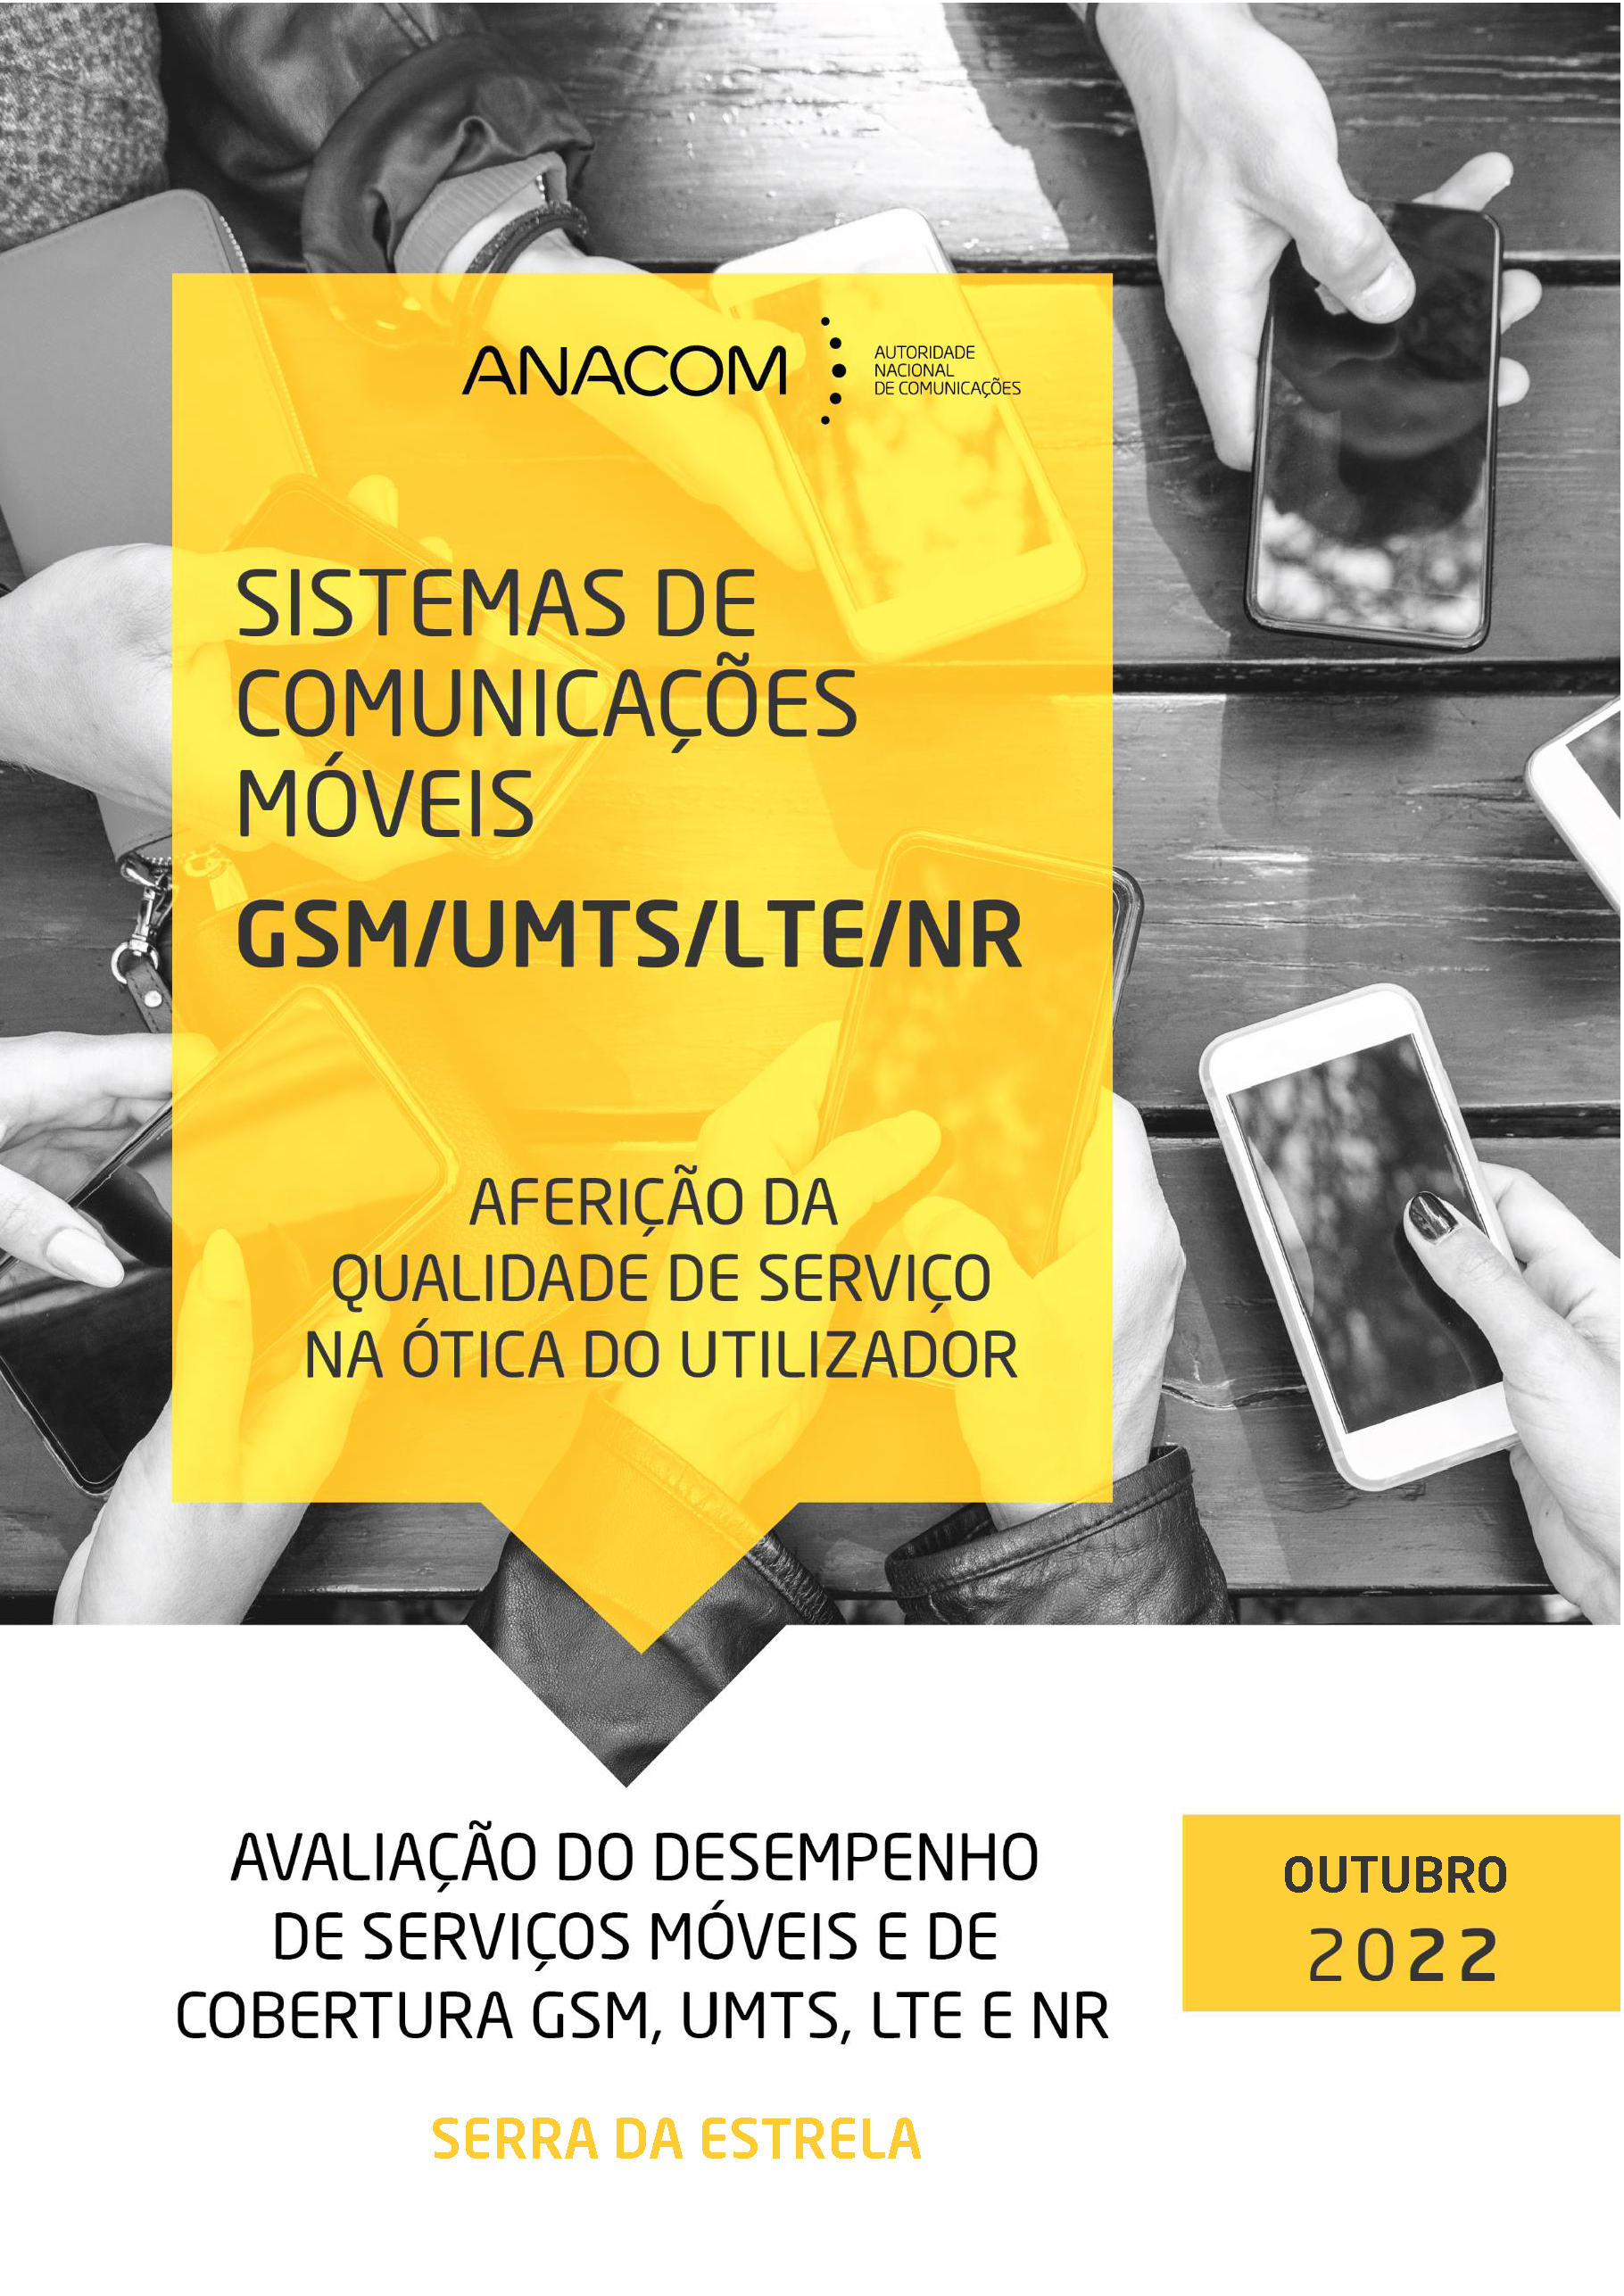 Avaliação do desempenho de serviços móveis e de cobertura GSM, UMTS, LTE e NR na Serra da Estrela